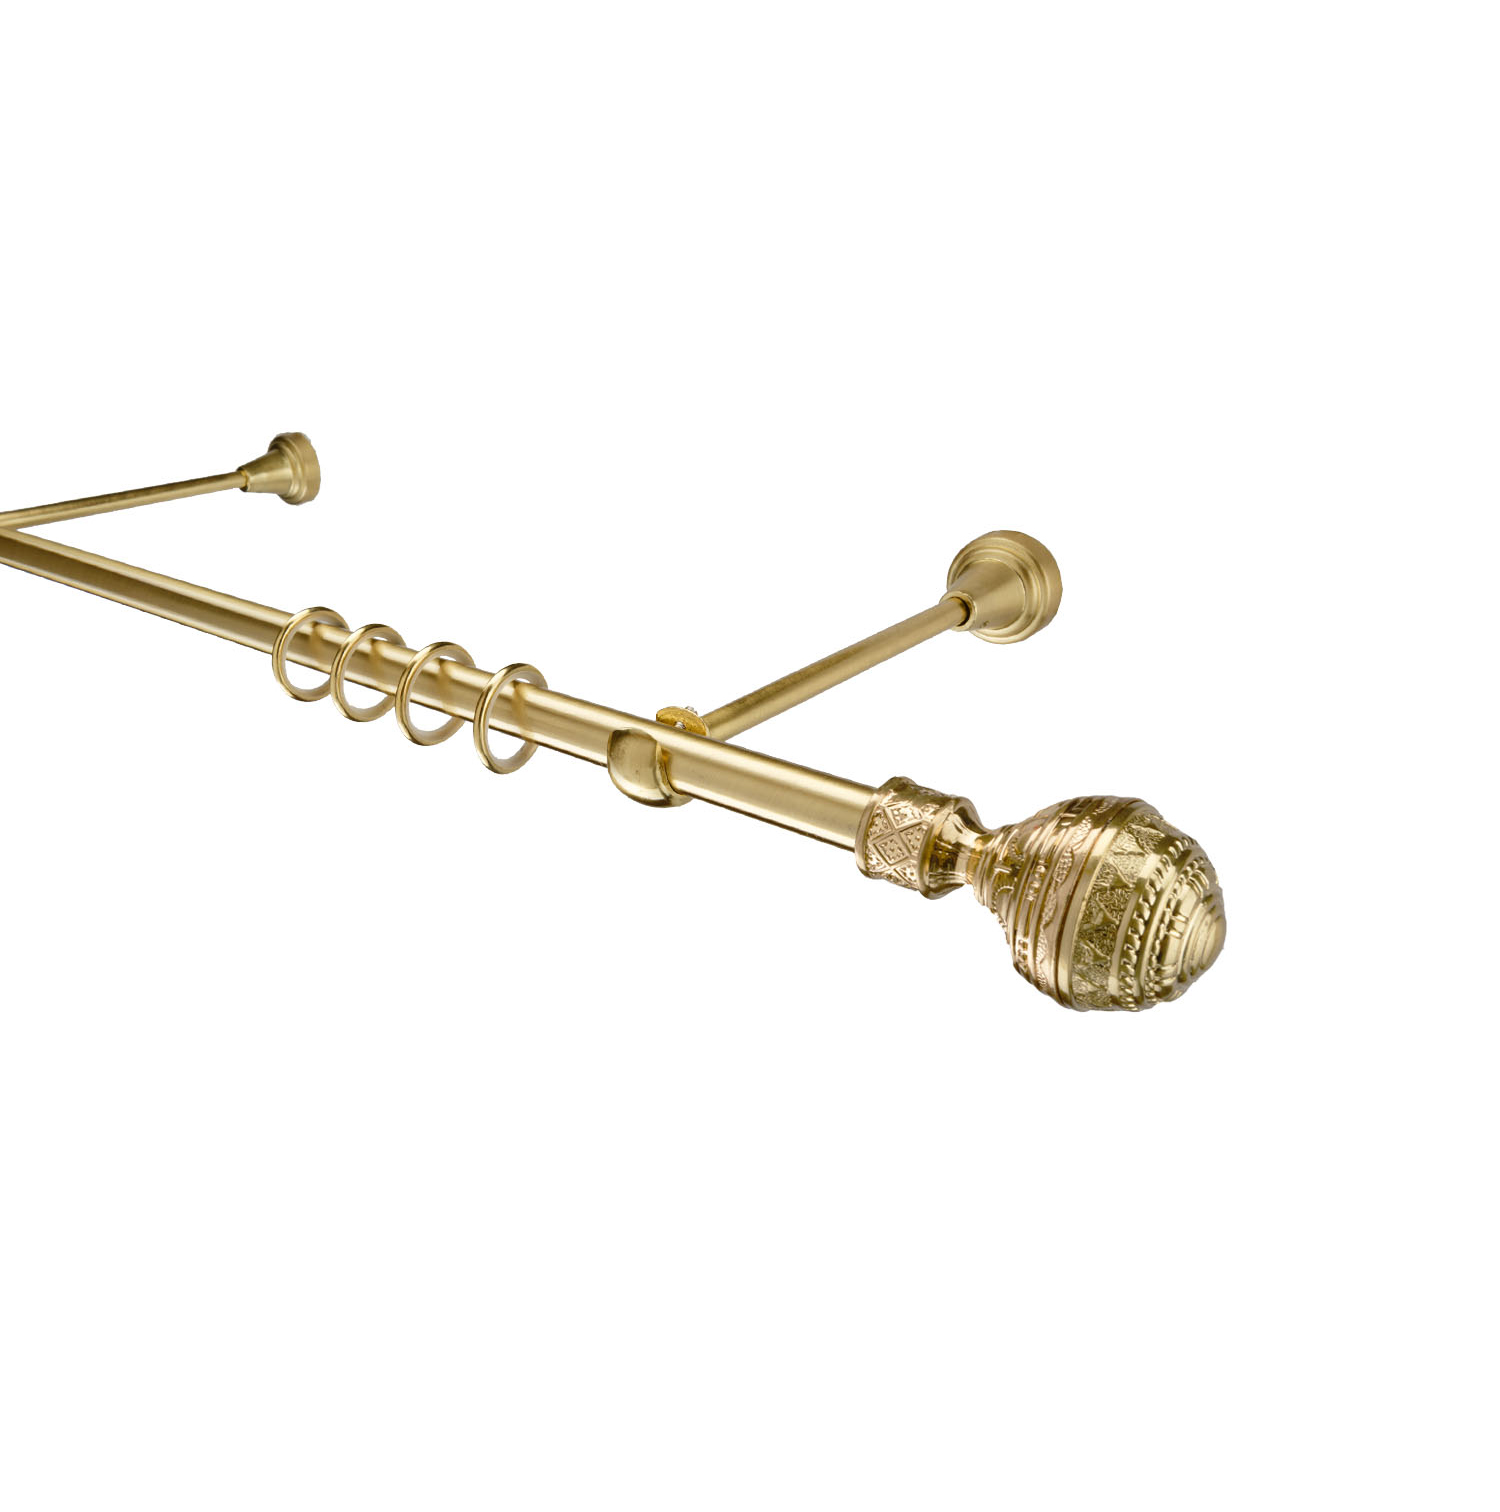 Металлический карниз для штор Роял, однорядный 16 мм, золото, гладкая штанга, длина 160 см - фото Wikidecor.ru